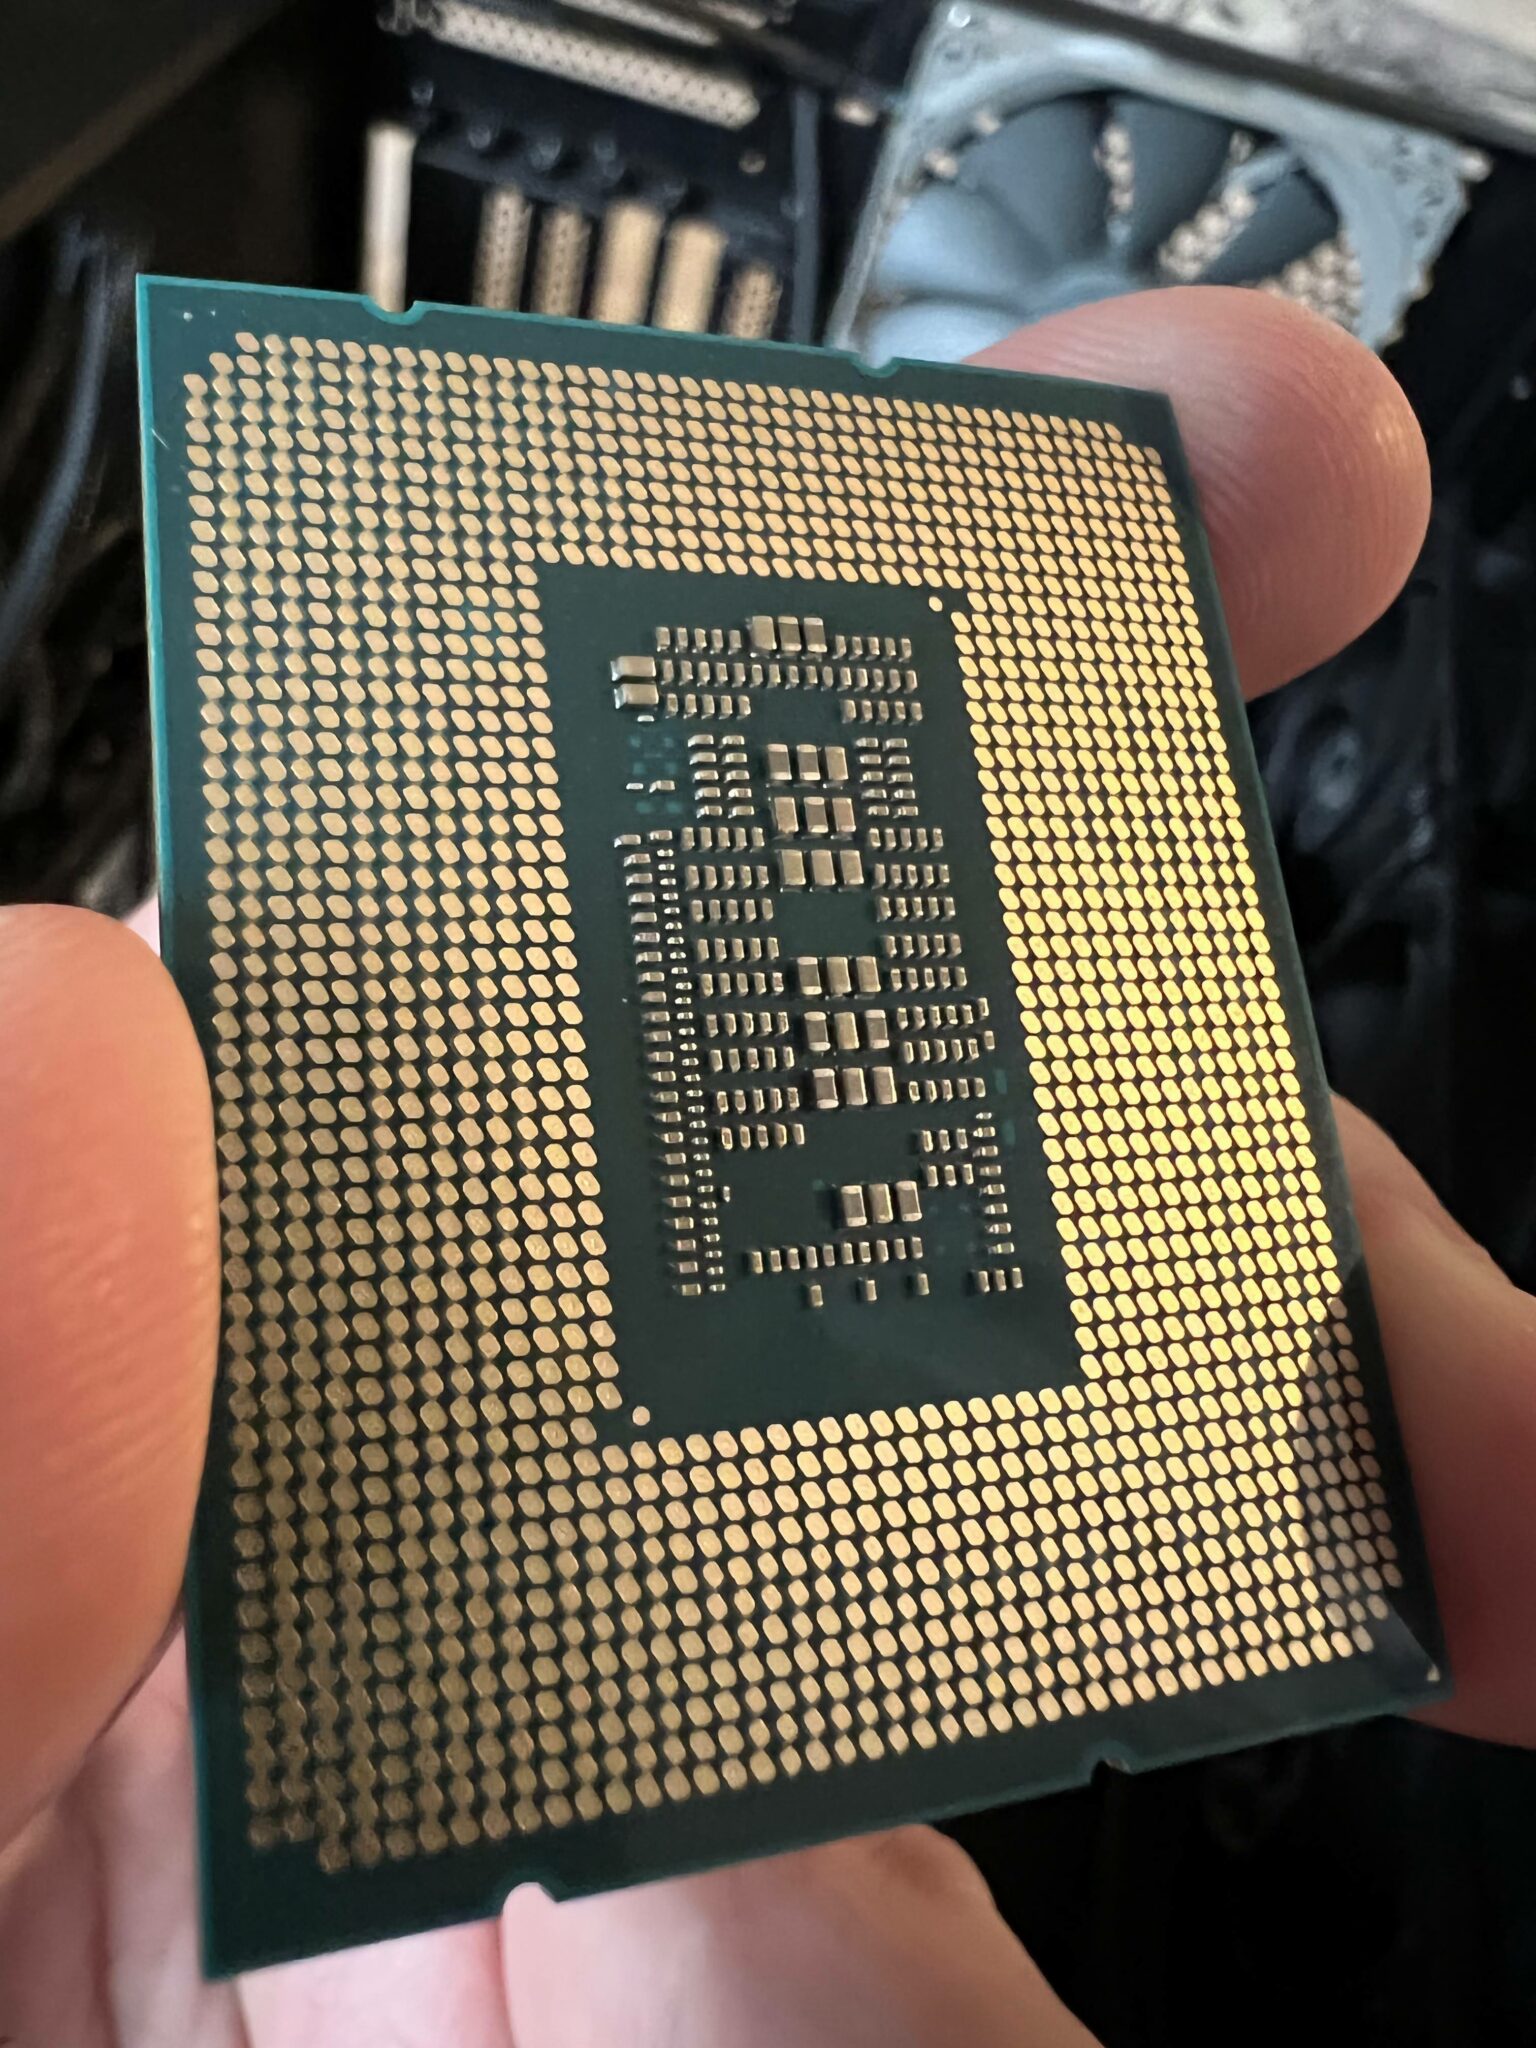 Процессор intel core 12700